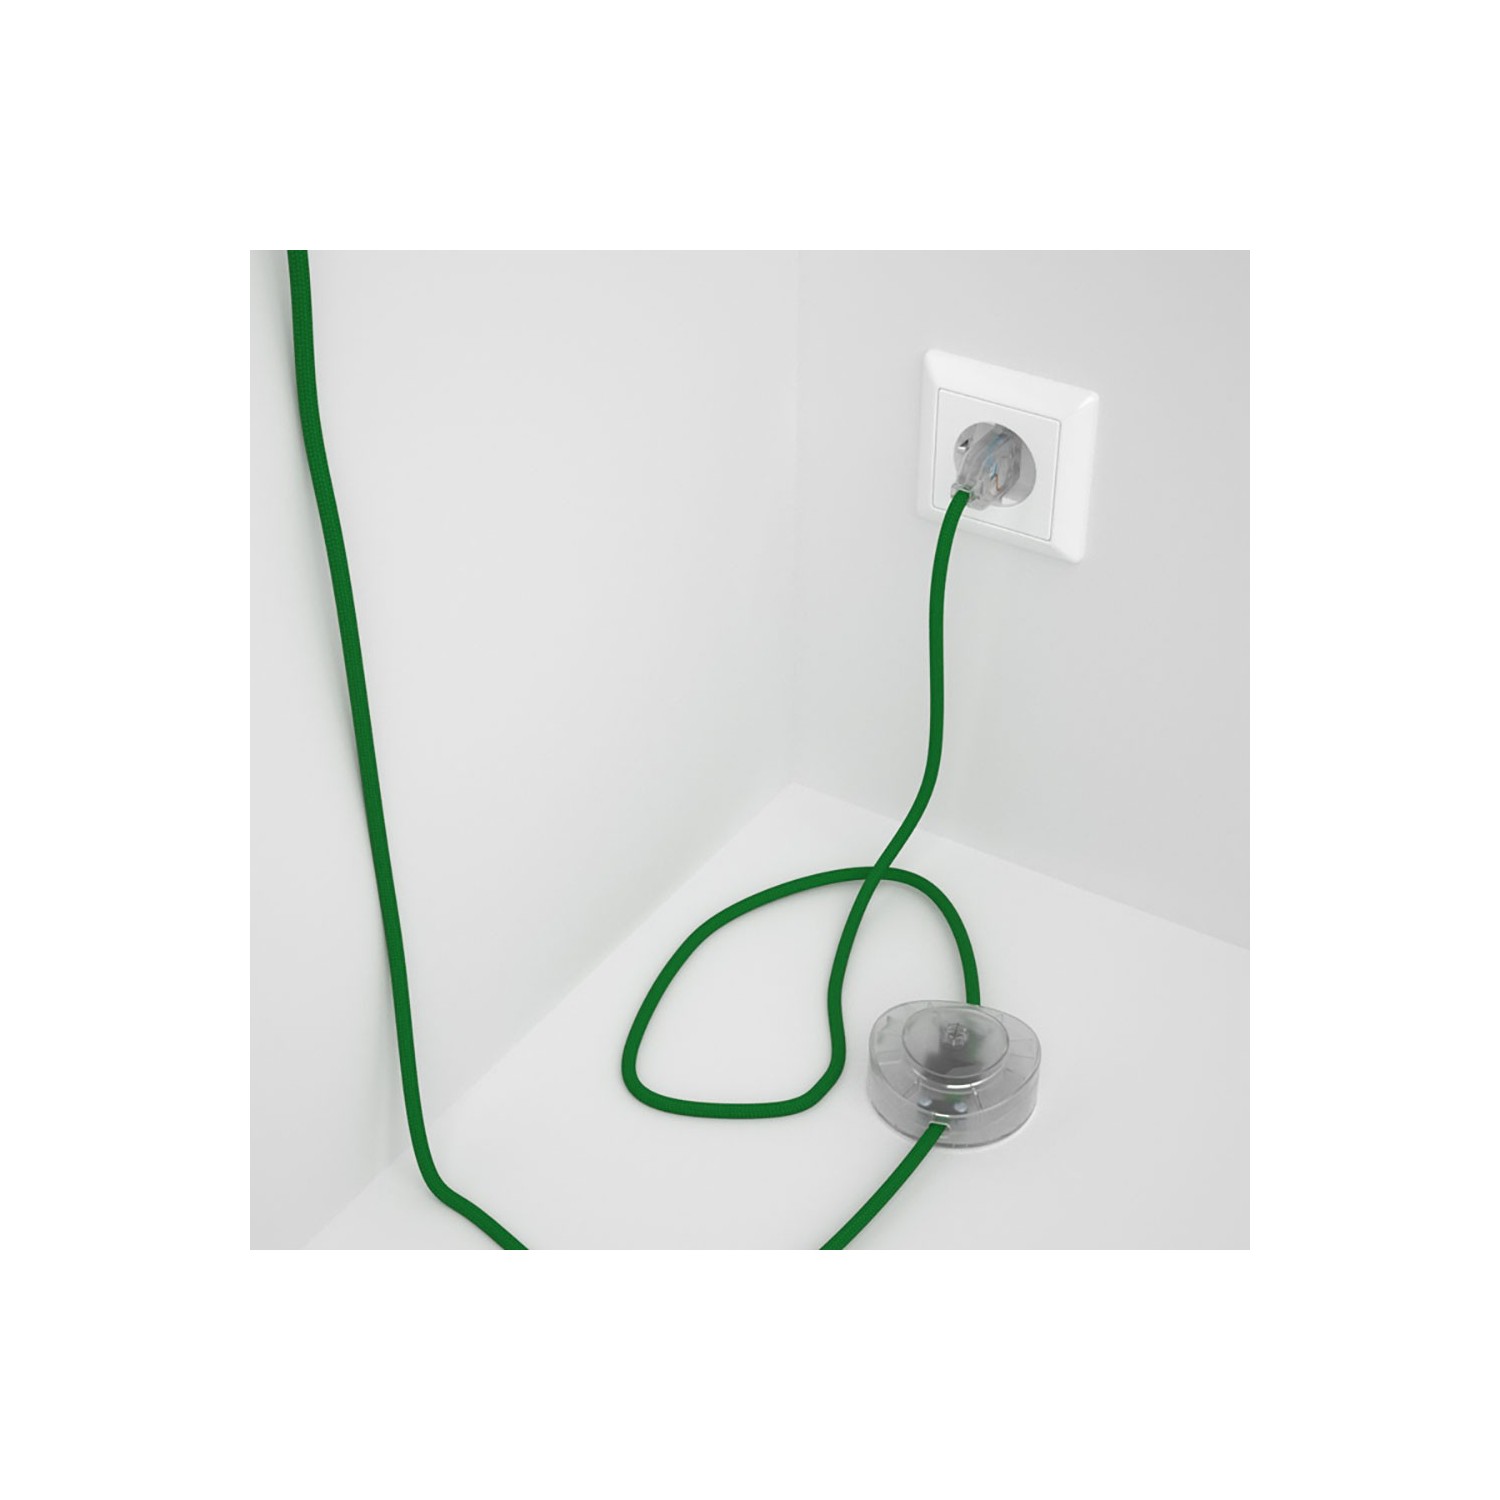 Strijkijzersnoer set RM06 groen viscose 3 m. voor staande lamp met stekker en voetschakelaar.